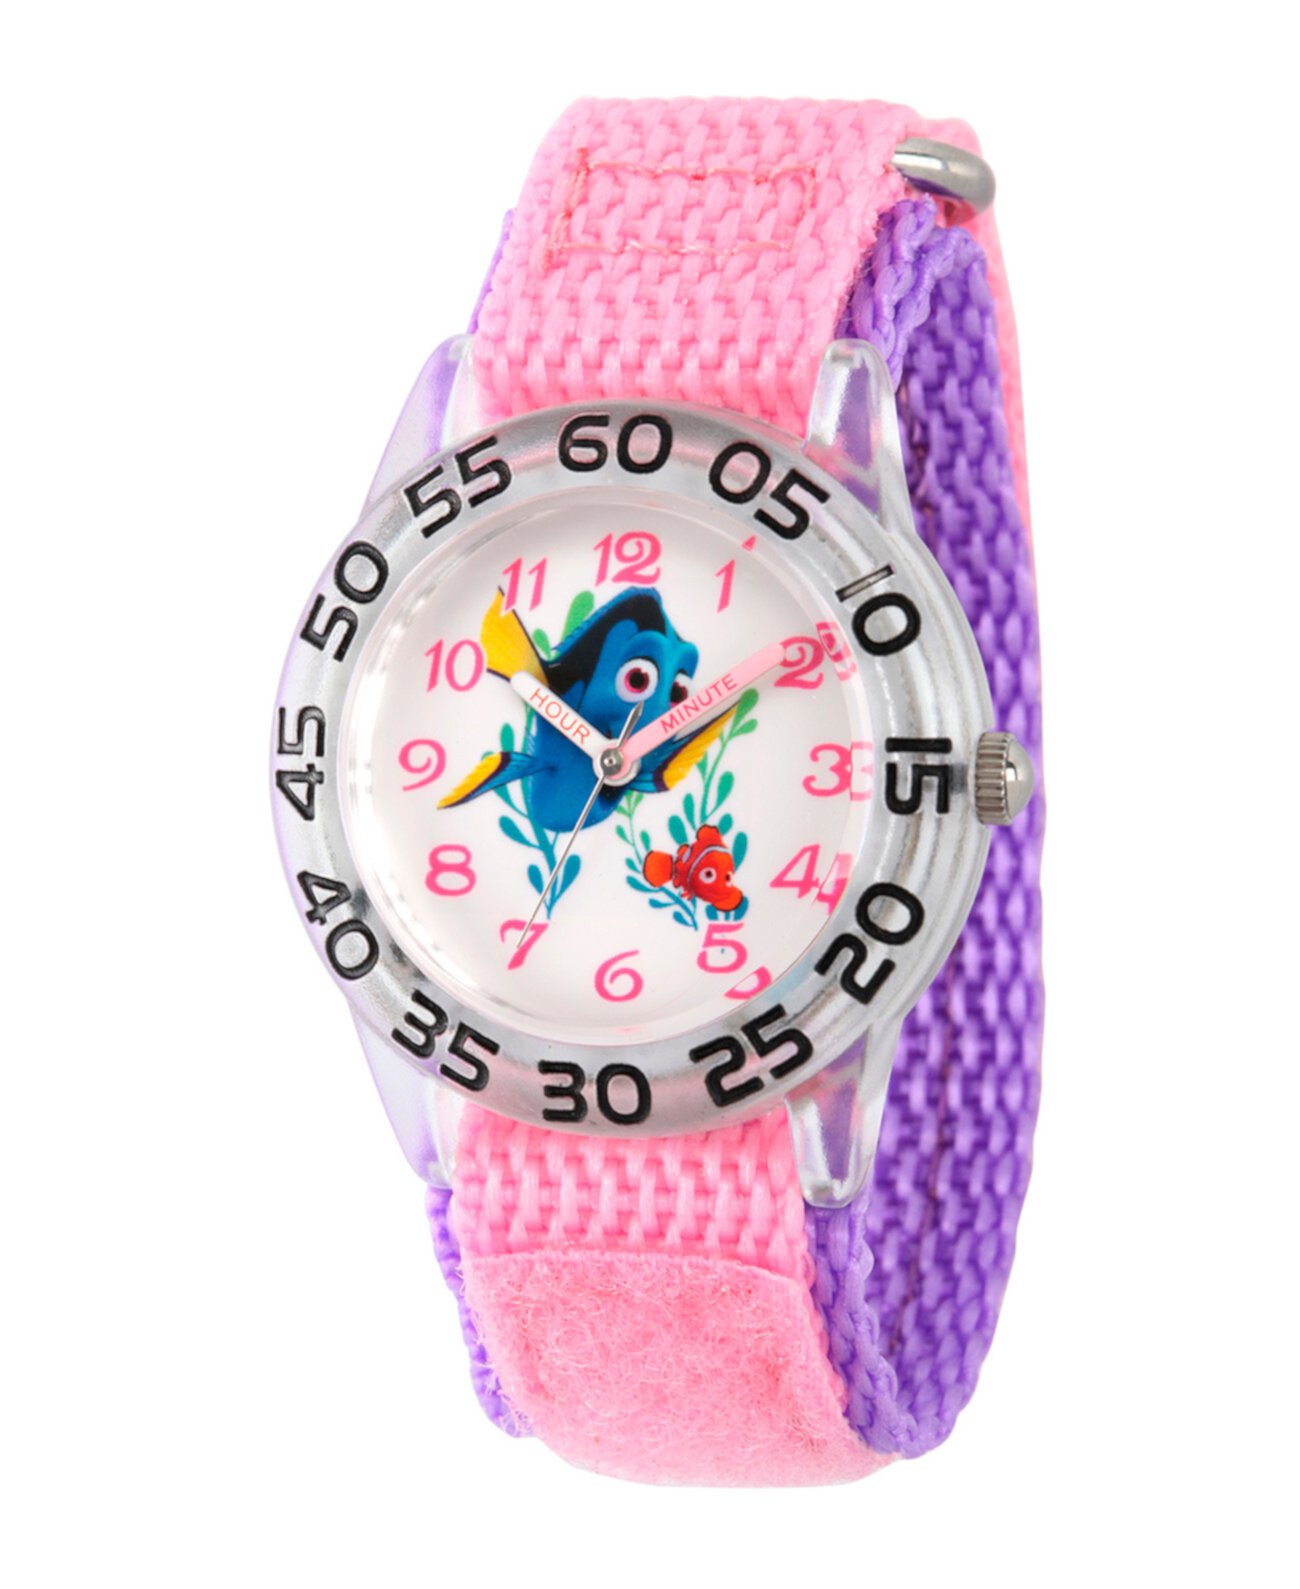 Дисней В поисках Dory Nemo и пластичных часов для учителей Dory Girls Ewatchfactory